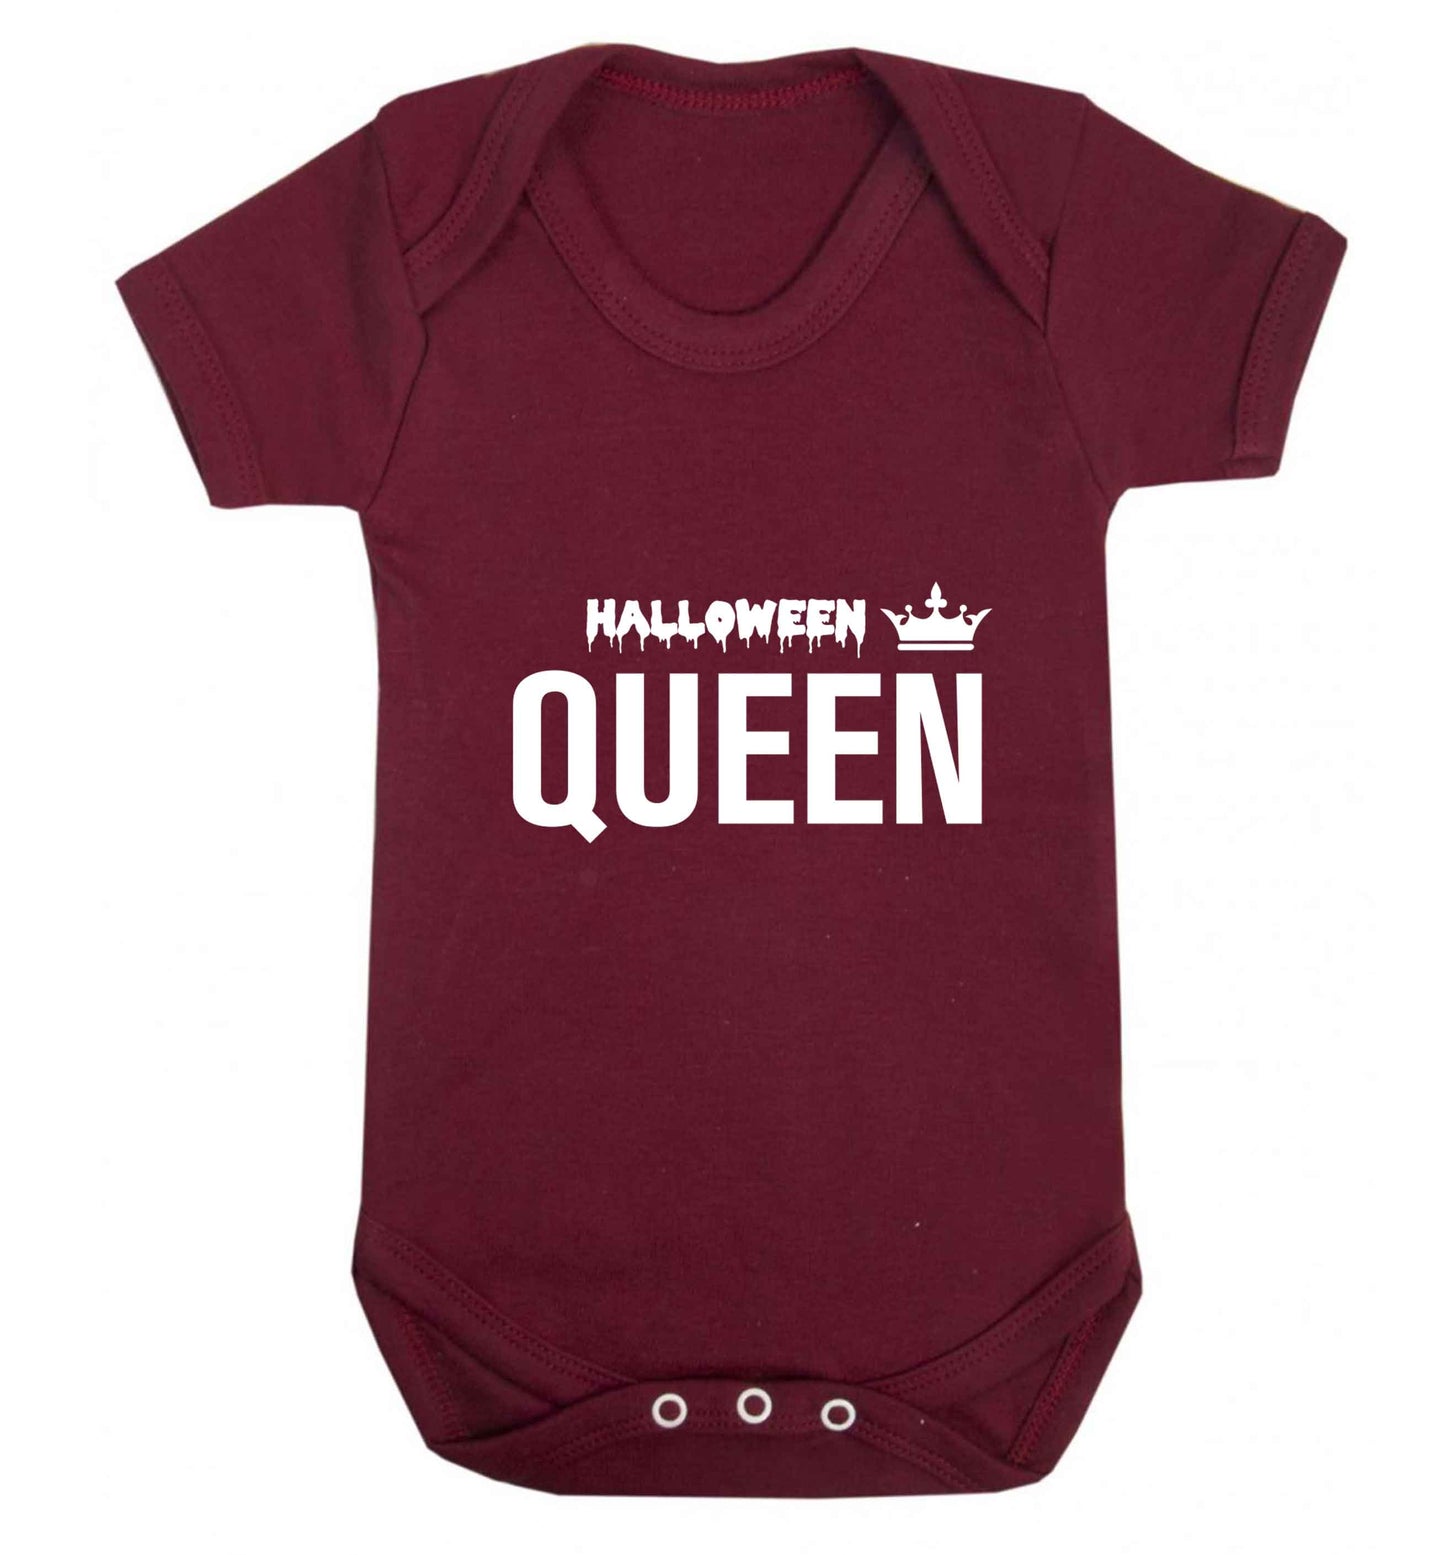 Halloween queen baby vest maroon 18-24 months